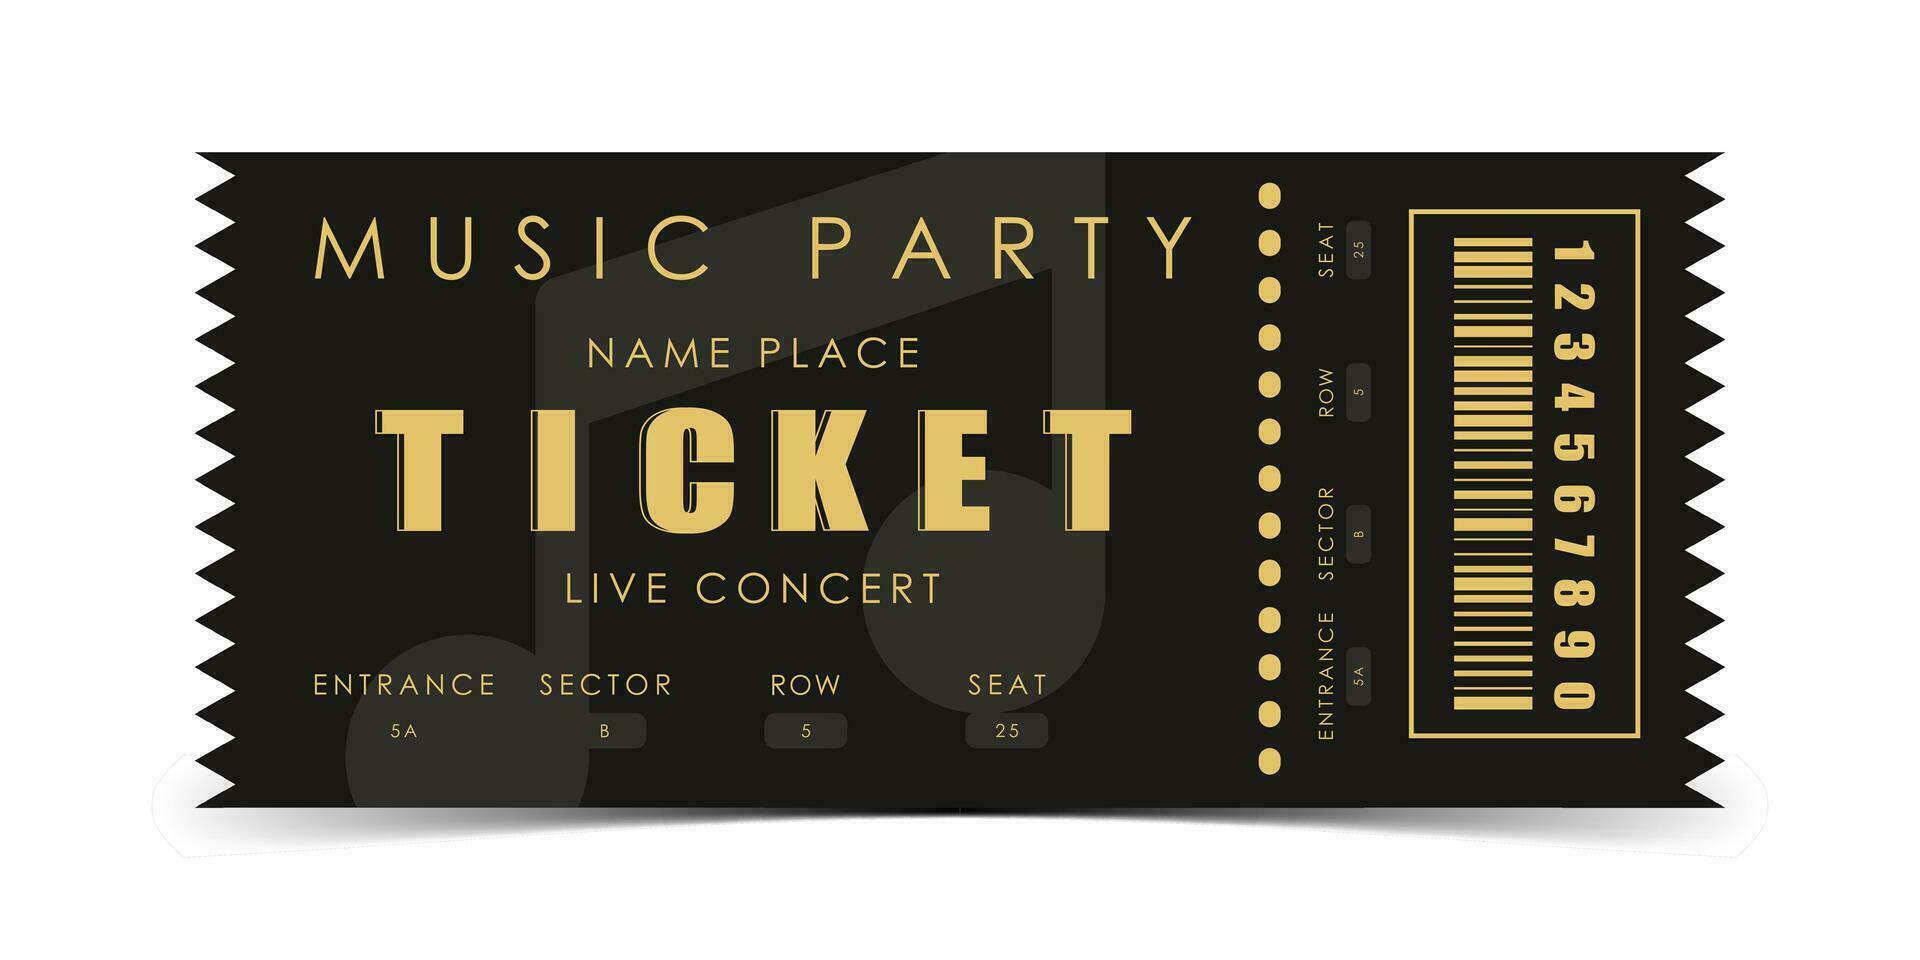 monster ticket voor een musical concert. modern elegant ticket kaart illustratie sjabloon. vector illustratie.